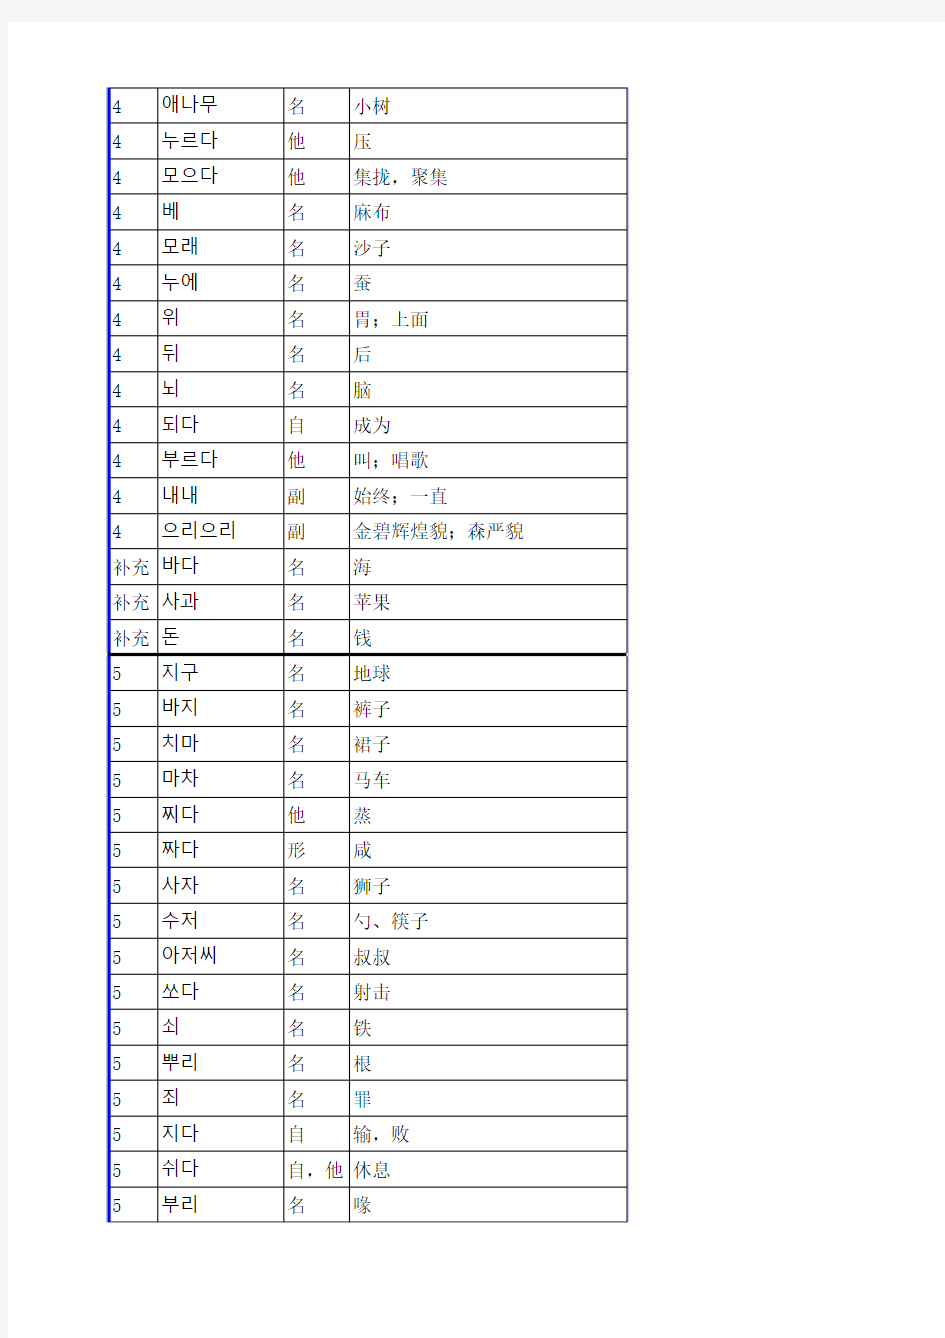 标准韩国语 第一册 单词 汇总